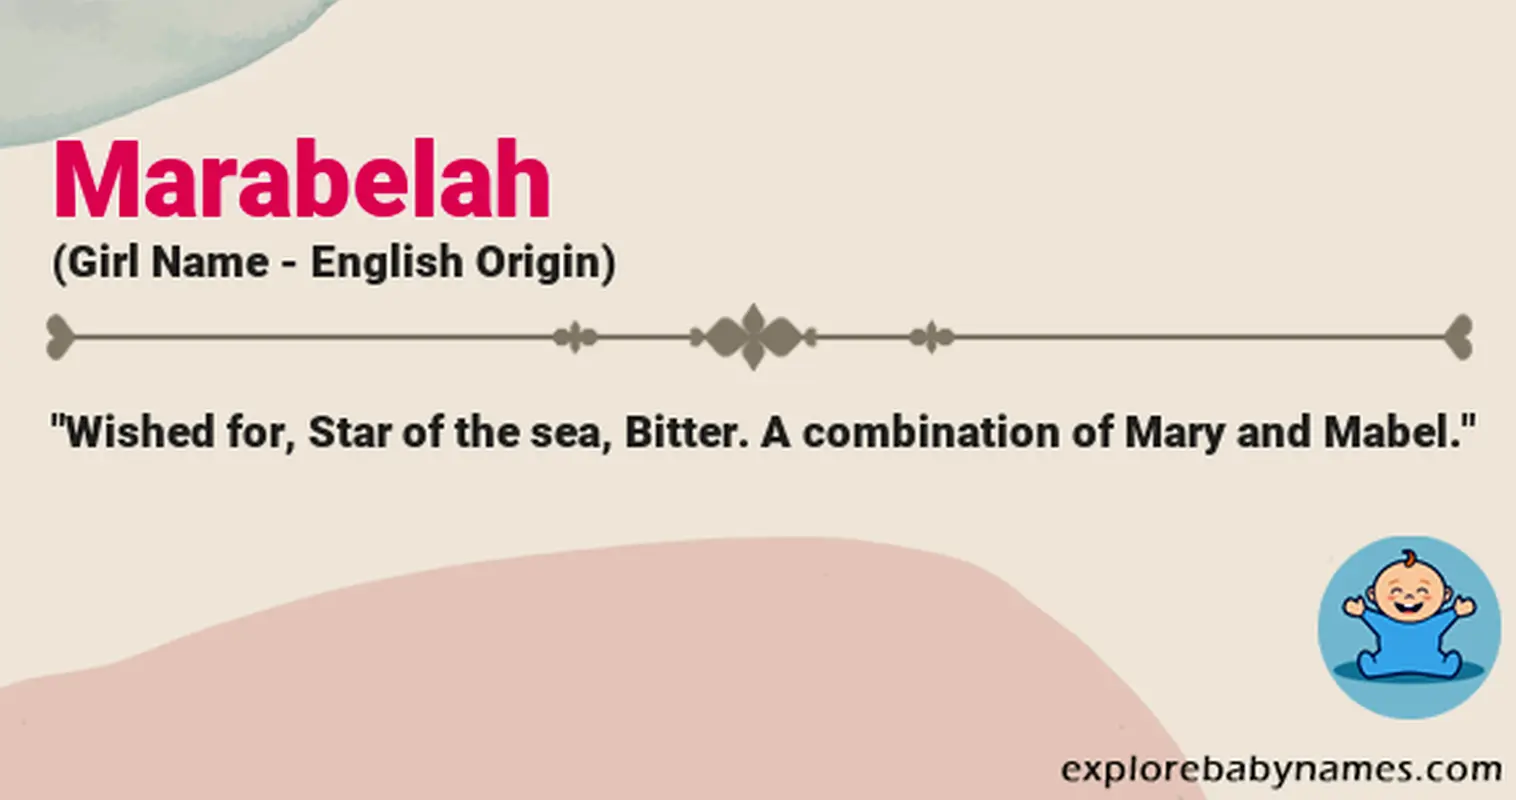 Meaning of Marabelah